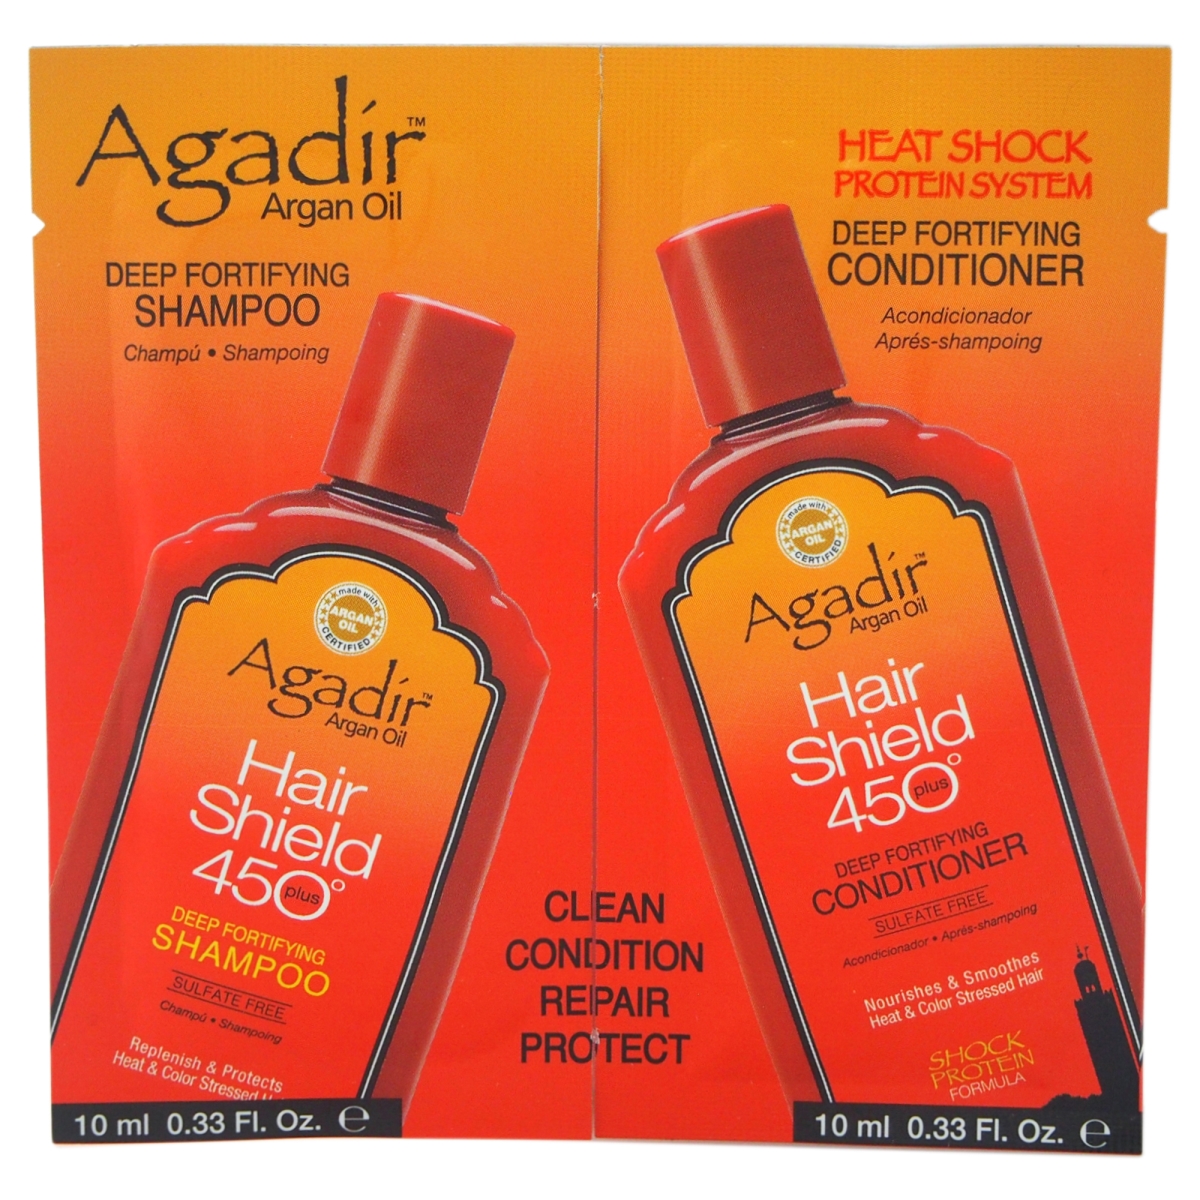 U-hc-10691 2 X 0.33 Oz Unisex Argan Oil Hair Shield 450 Deep Fortifying Shampoo & Conditioner Duo